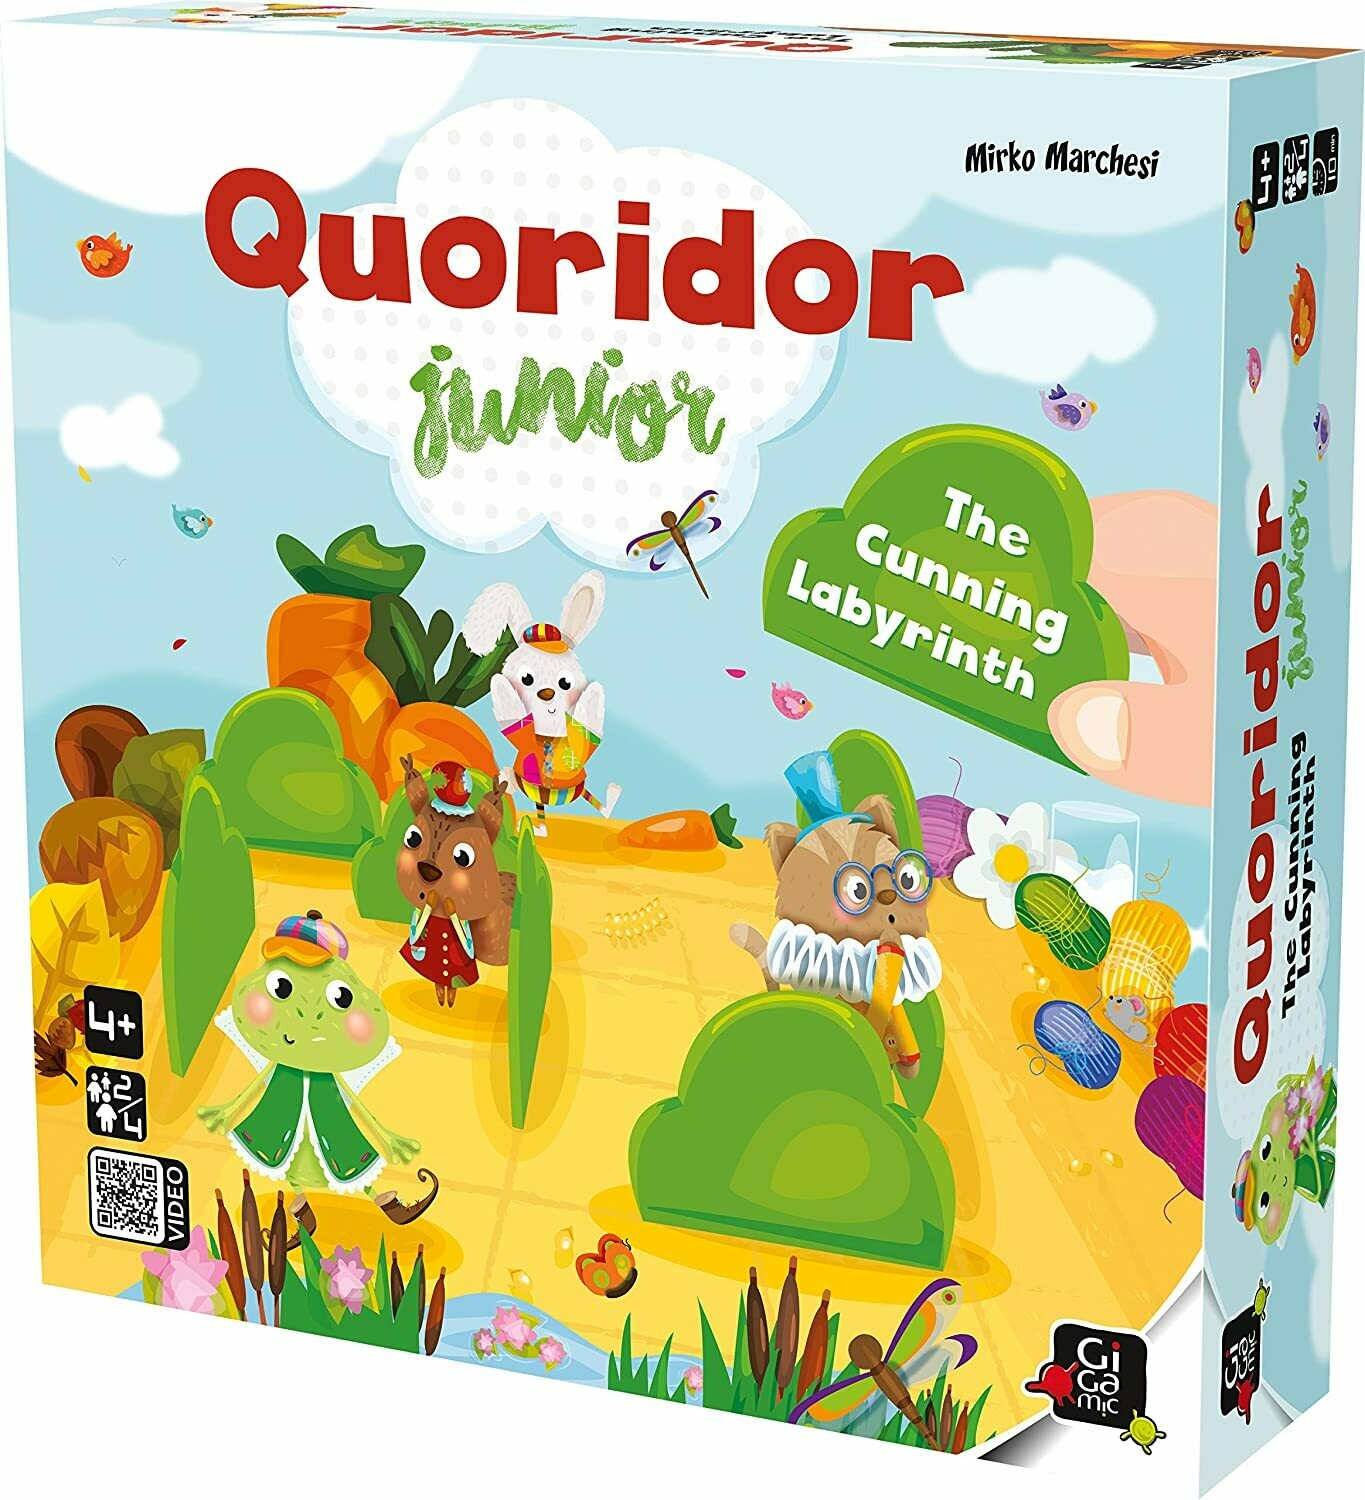 Quoridor Junior Game